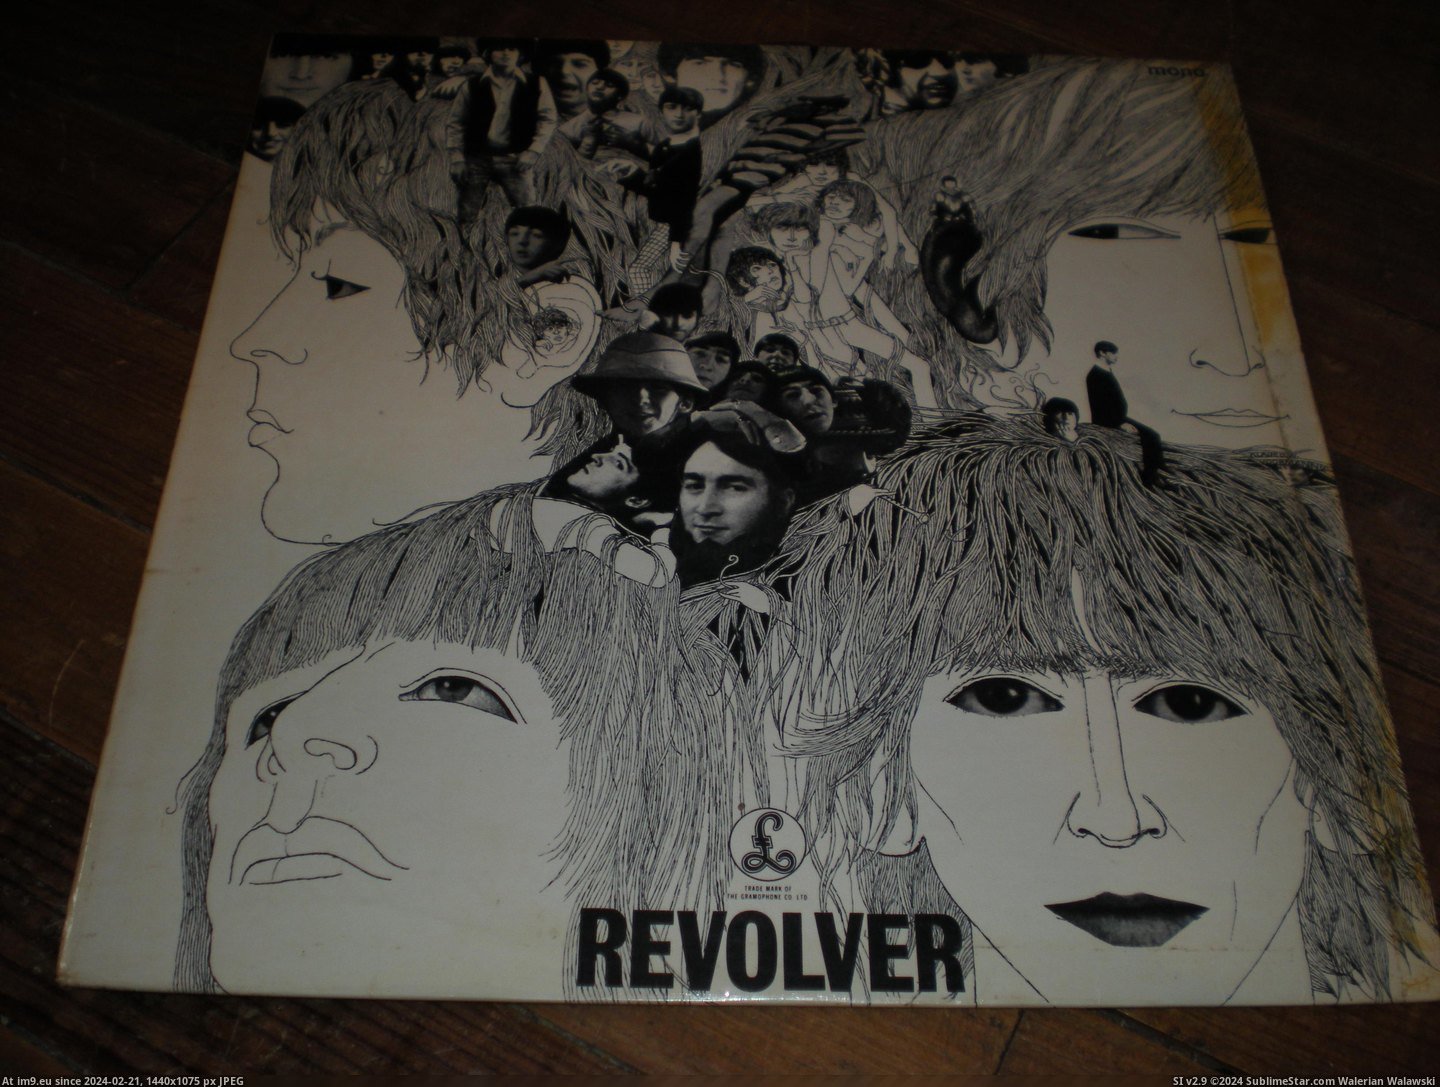  #Revolver  Revolver-2-2 6 Pic. (Bild von album new 1))